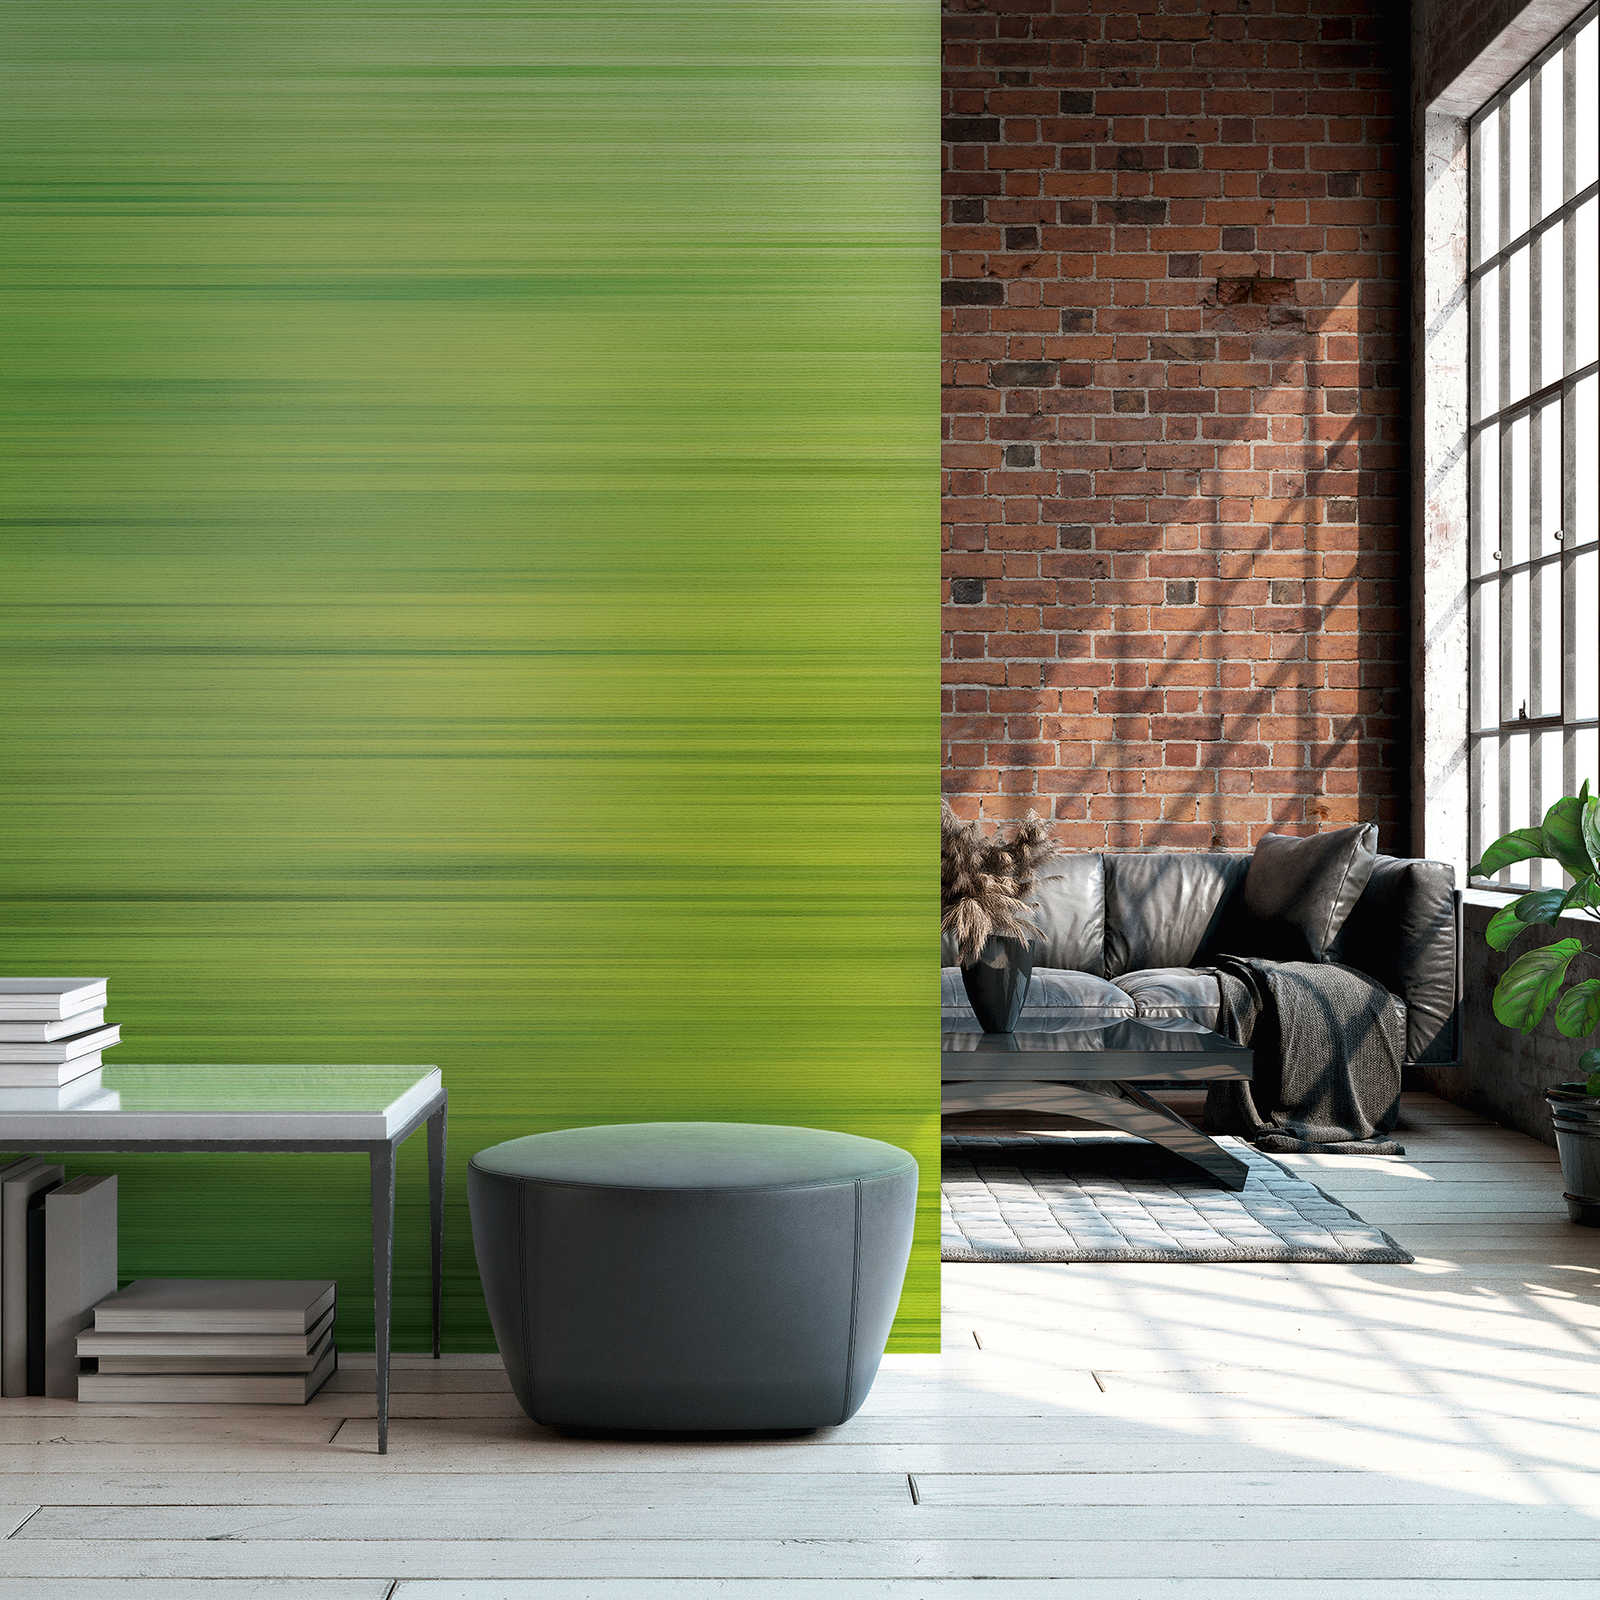 Behang noviteit - groen motief behang met kleurverloop design
